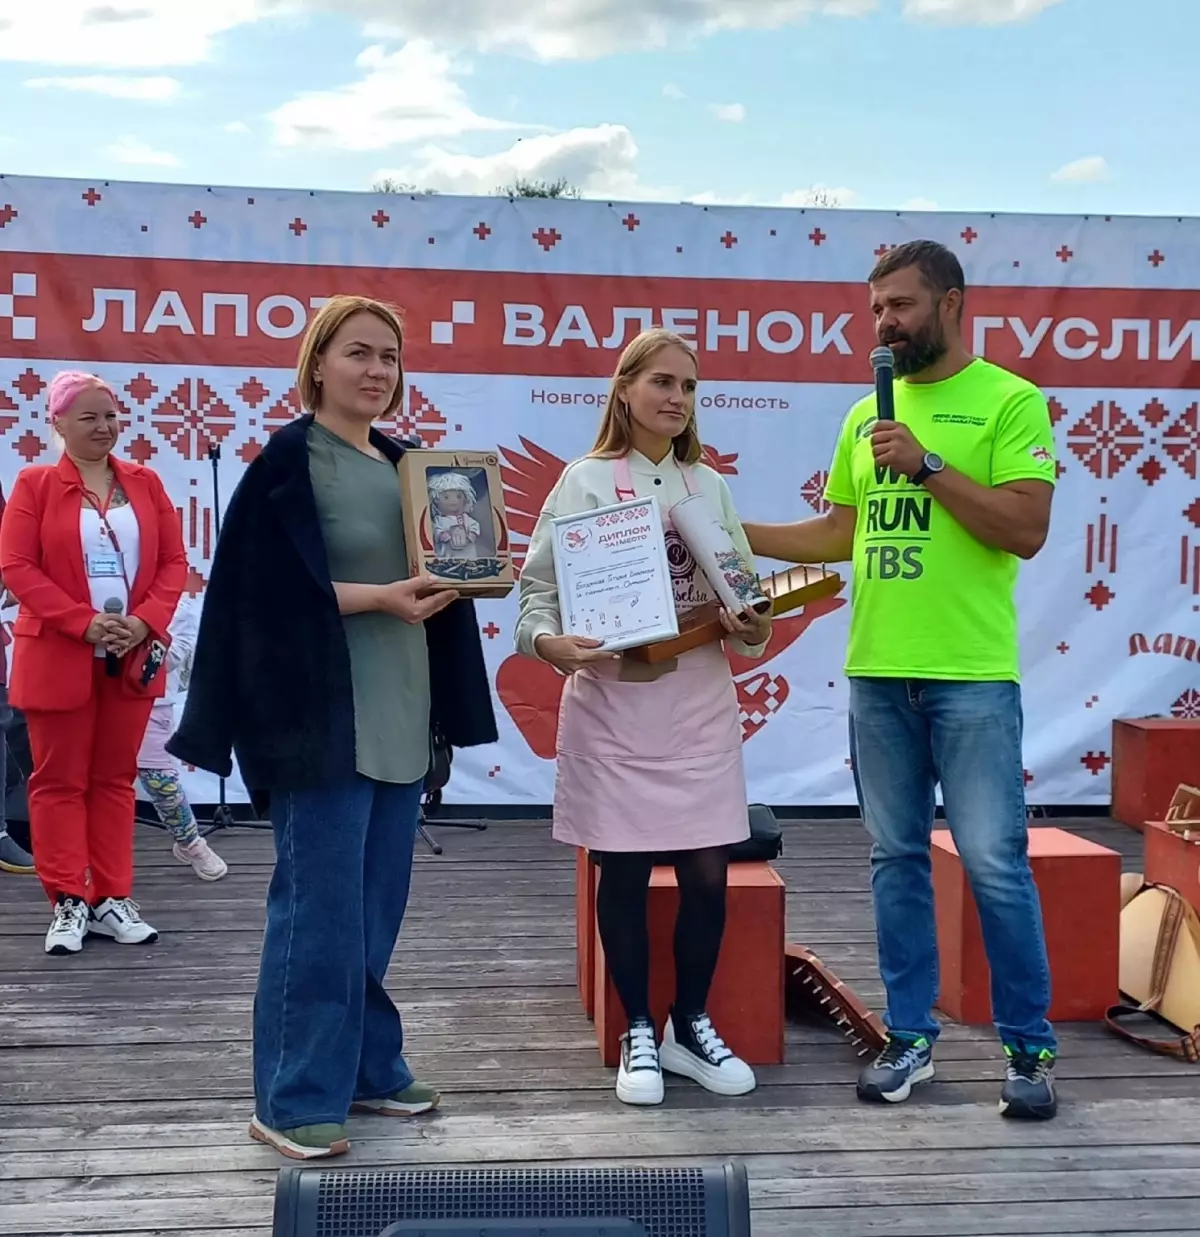 В Новгородском районе прошел фестиваль «Лапоть, валенок и гусли»